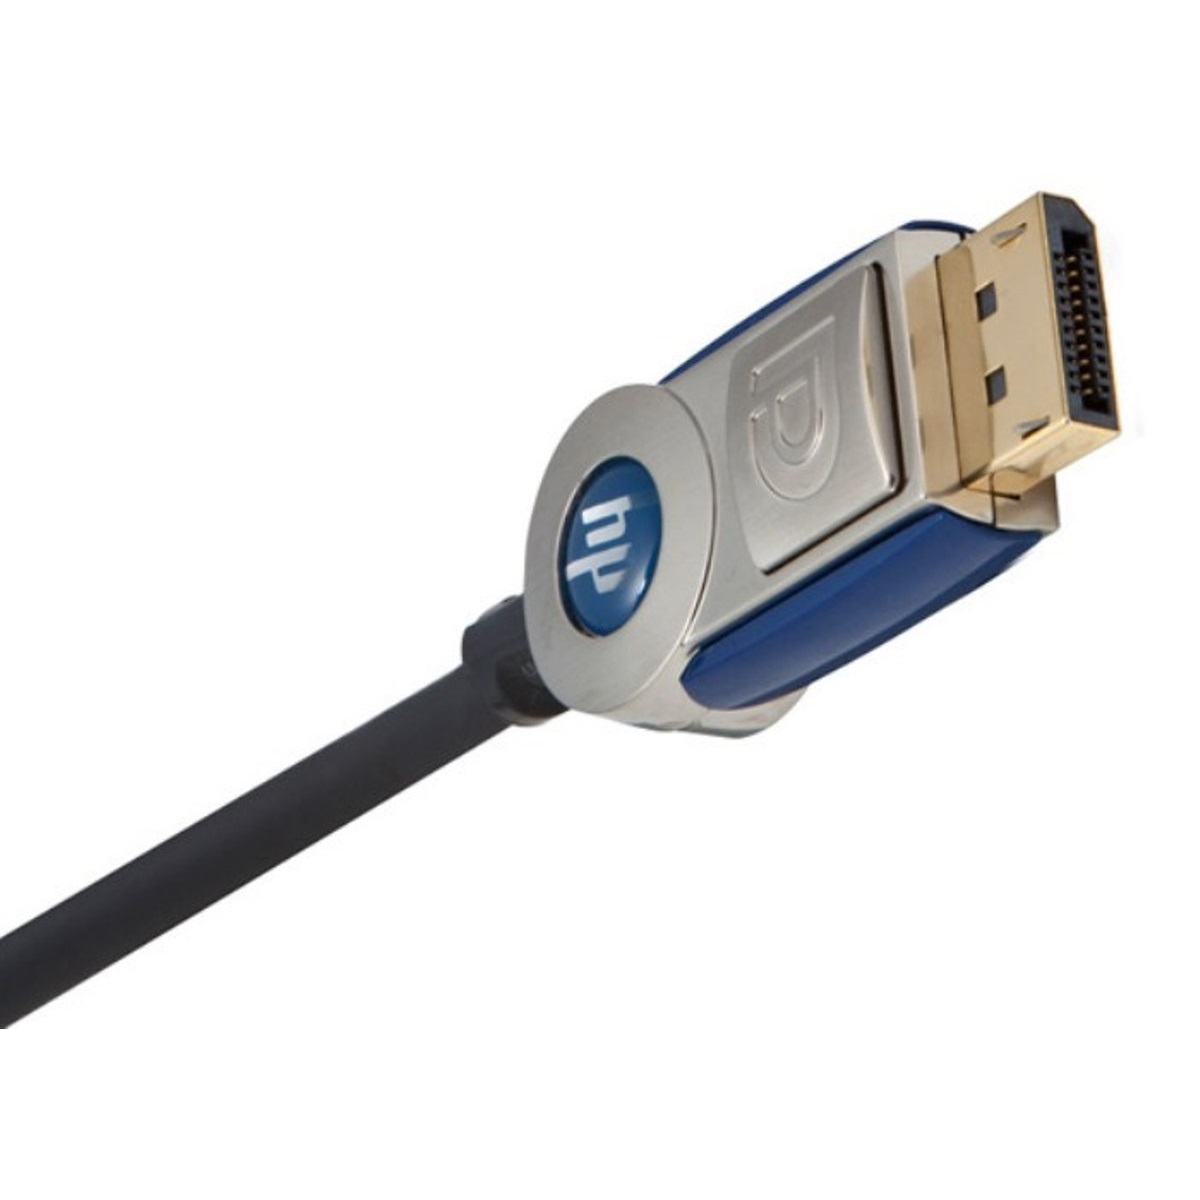 HP 4,8m Kabel, Displayport Schwarz MONSTER Displayport-Kabel CABLE